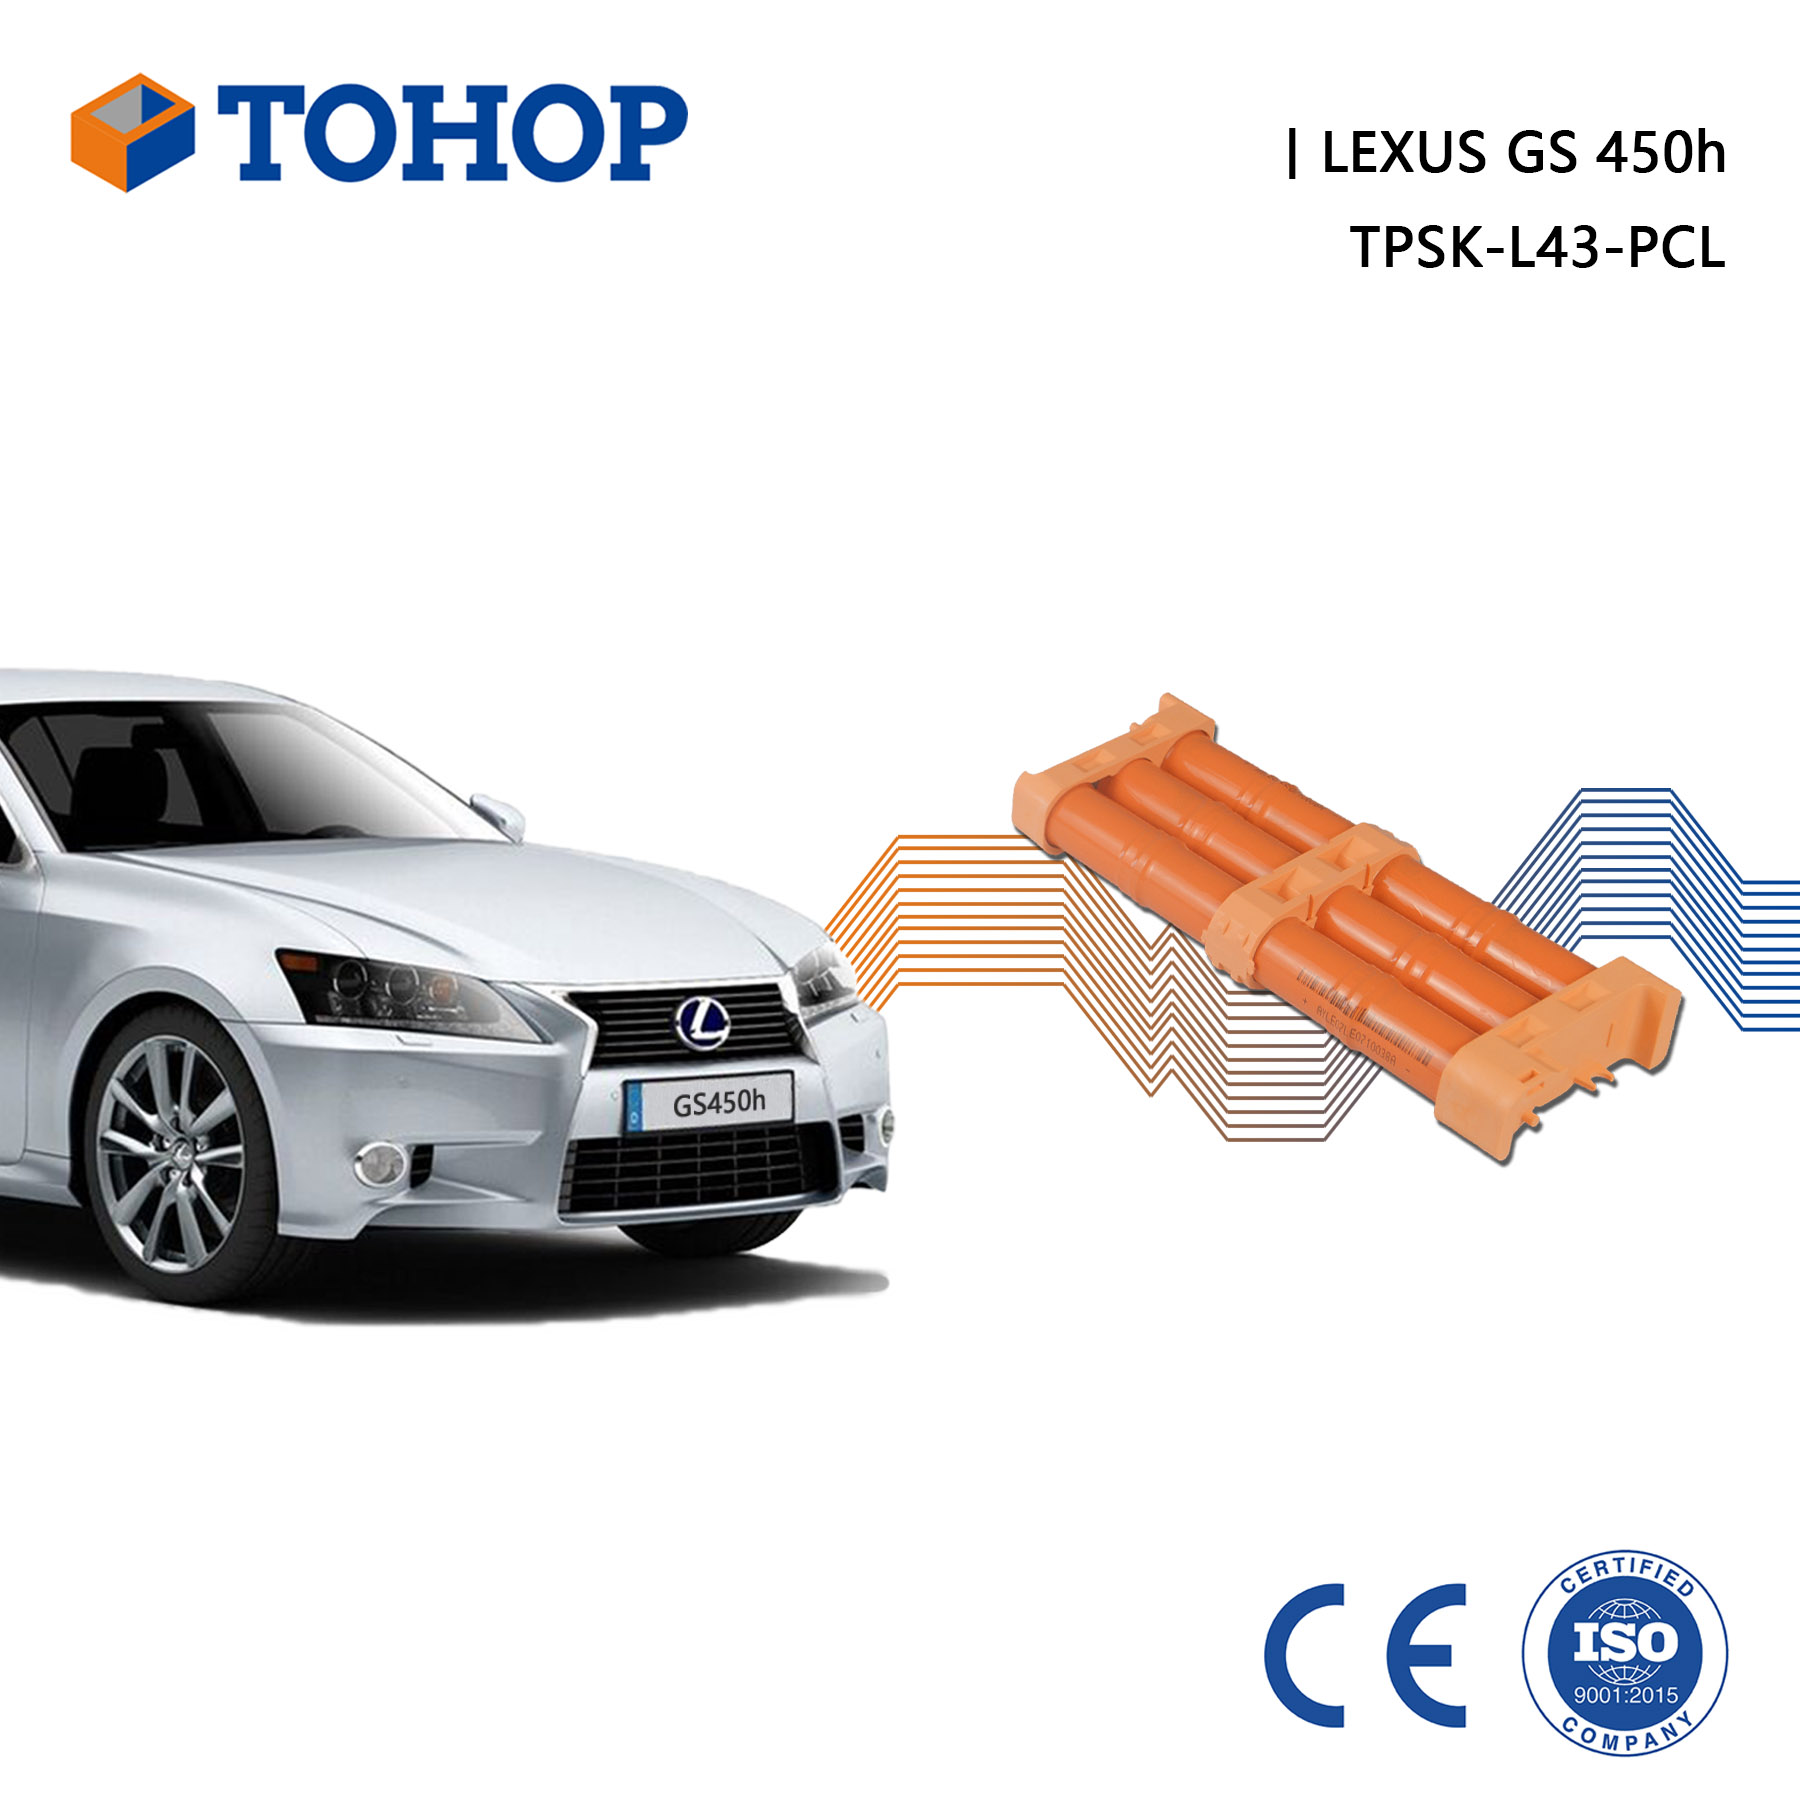 Lexus Thrid Gen. S190 Remplacement de batterie hybride pour HEV